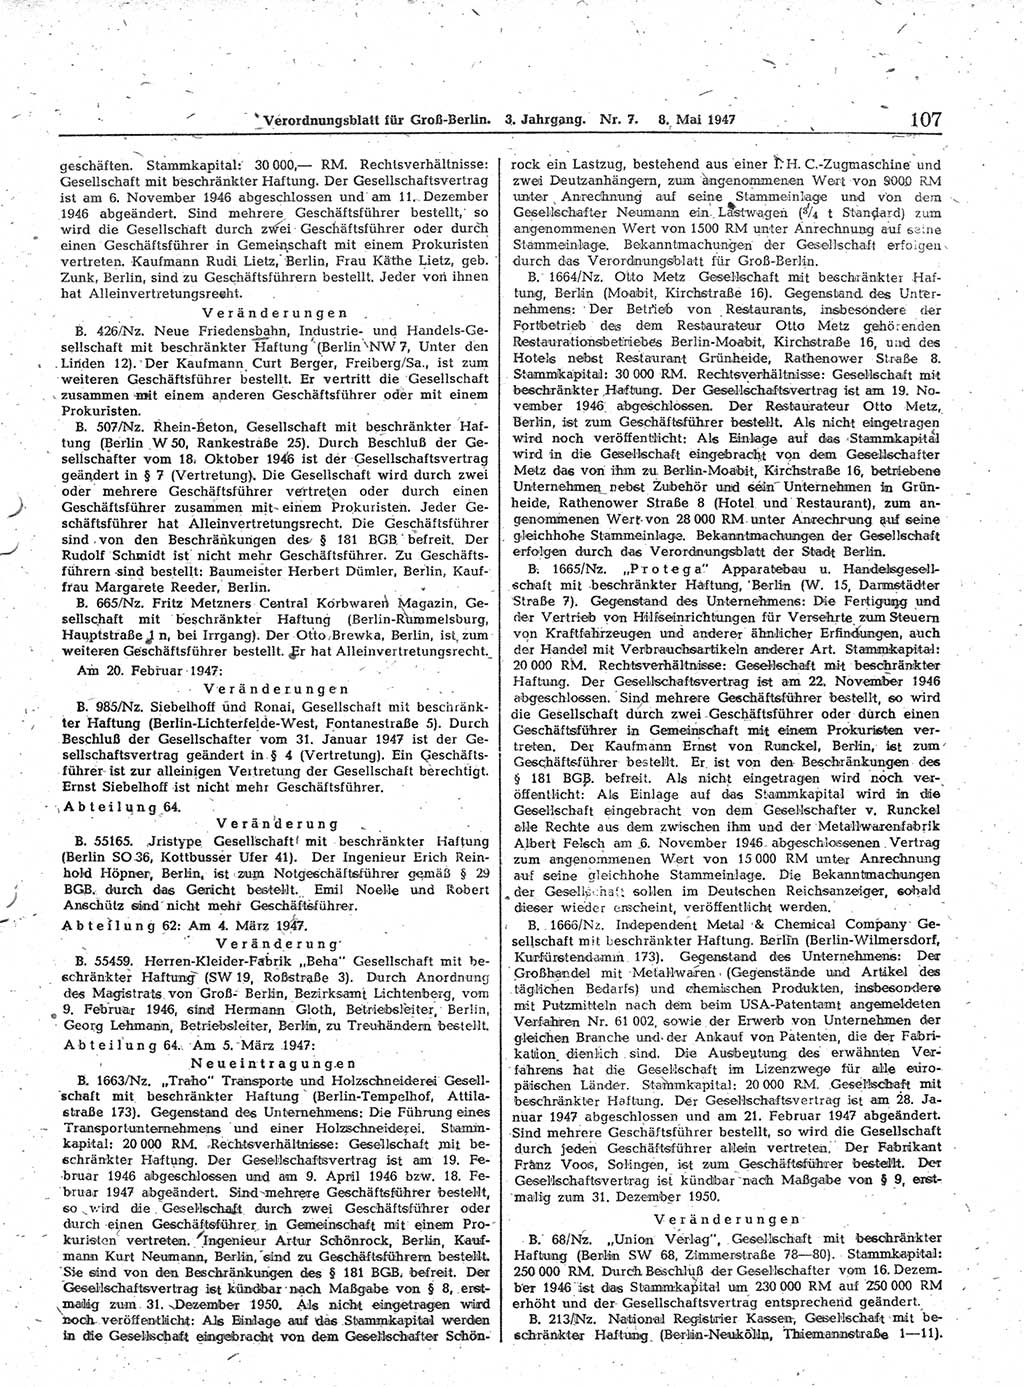 Verordnungsblatt (VOBl.) für Groß-Berlin 1947, Seite 107 (VOBl. Bln. 1947, S. 107)